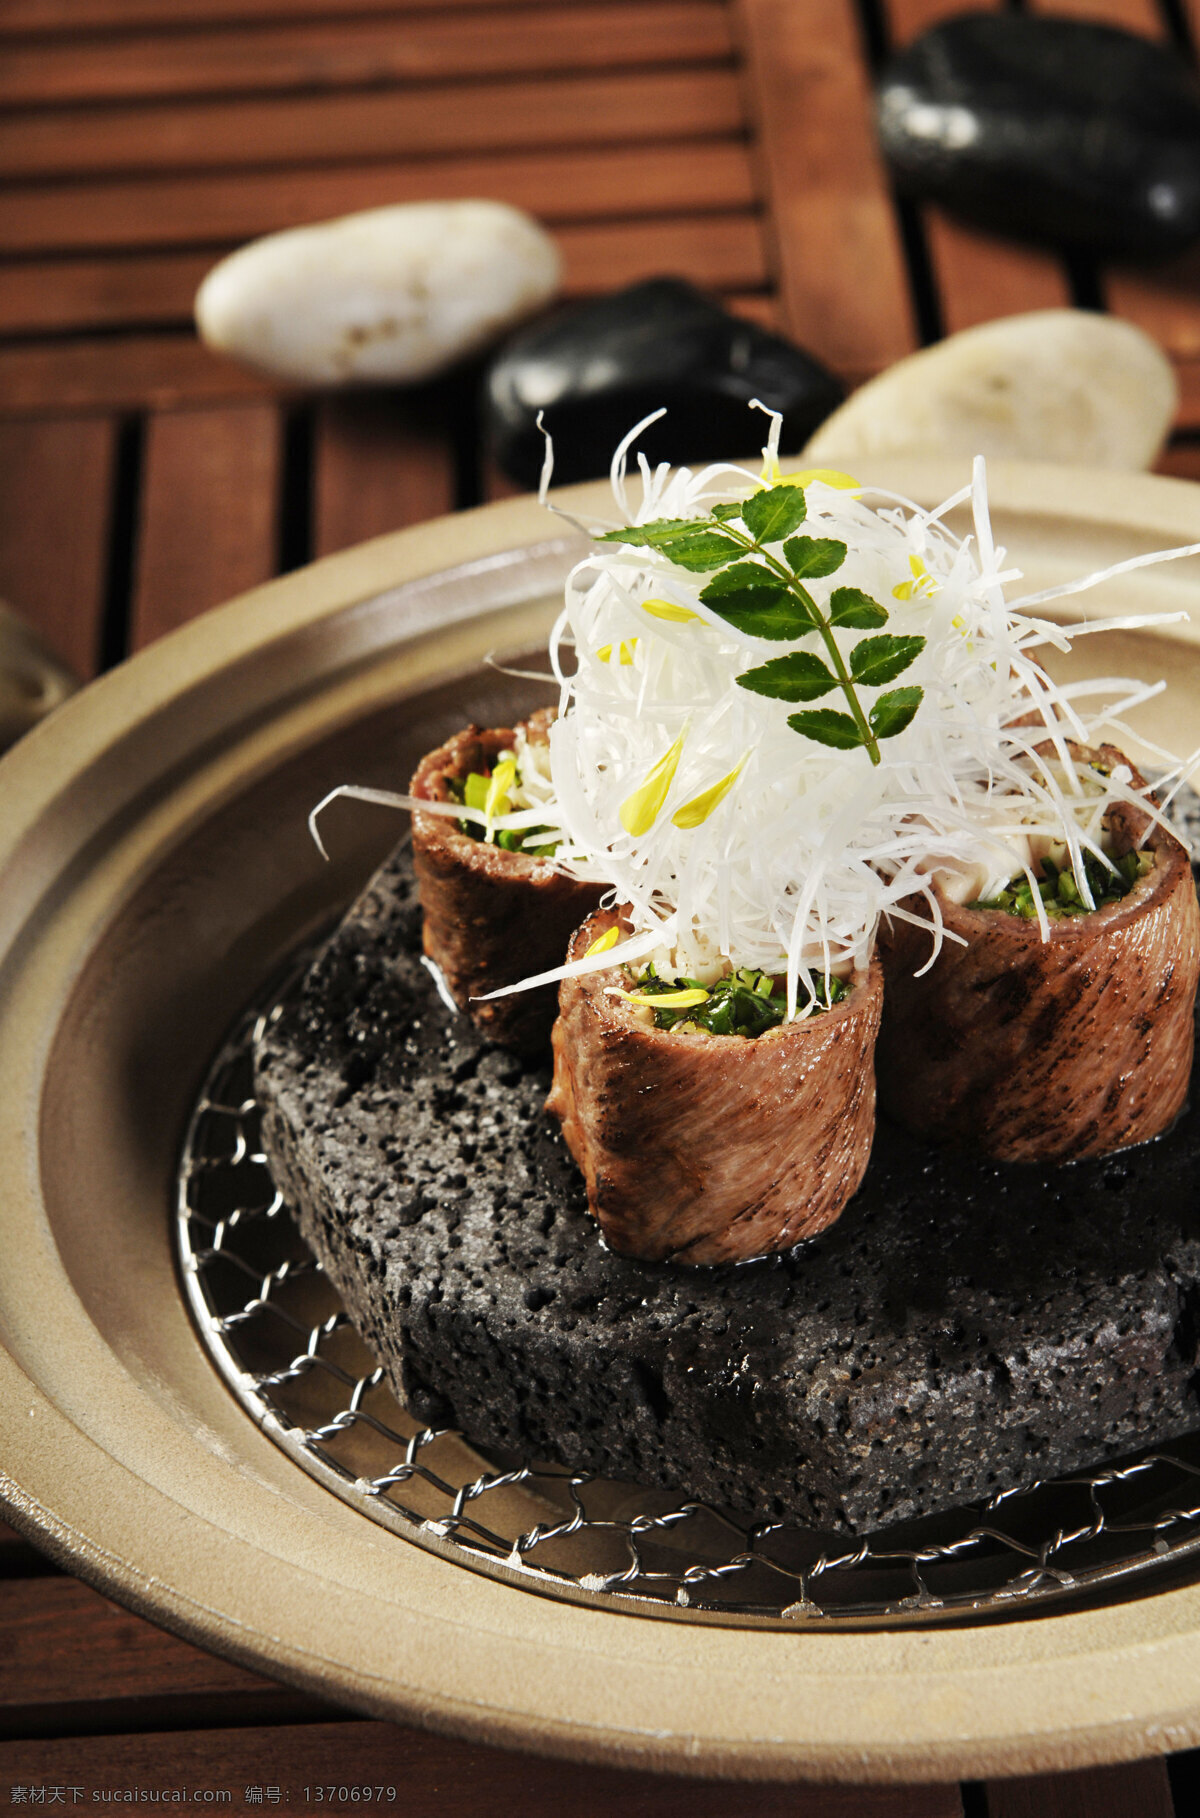 日本料理 石头烧 餐饮 酒店菜 高级菜 佳肴 美味佳肴 料理 美食 美味 传统美食 餐饮美食